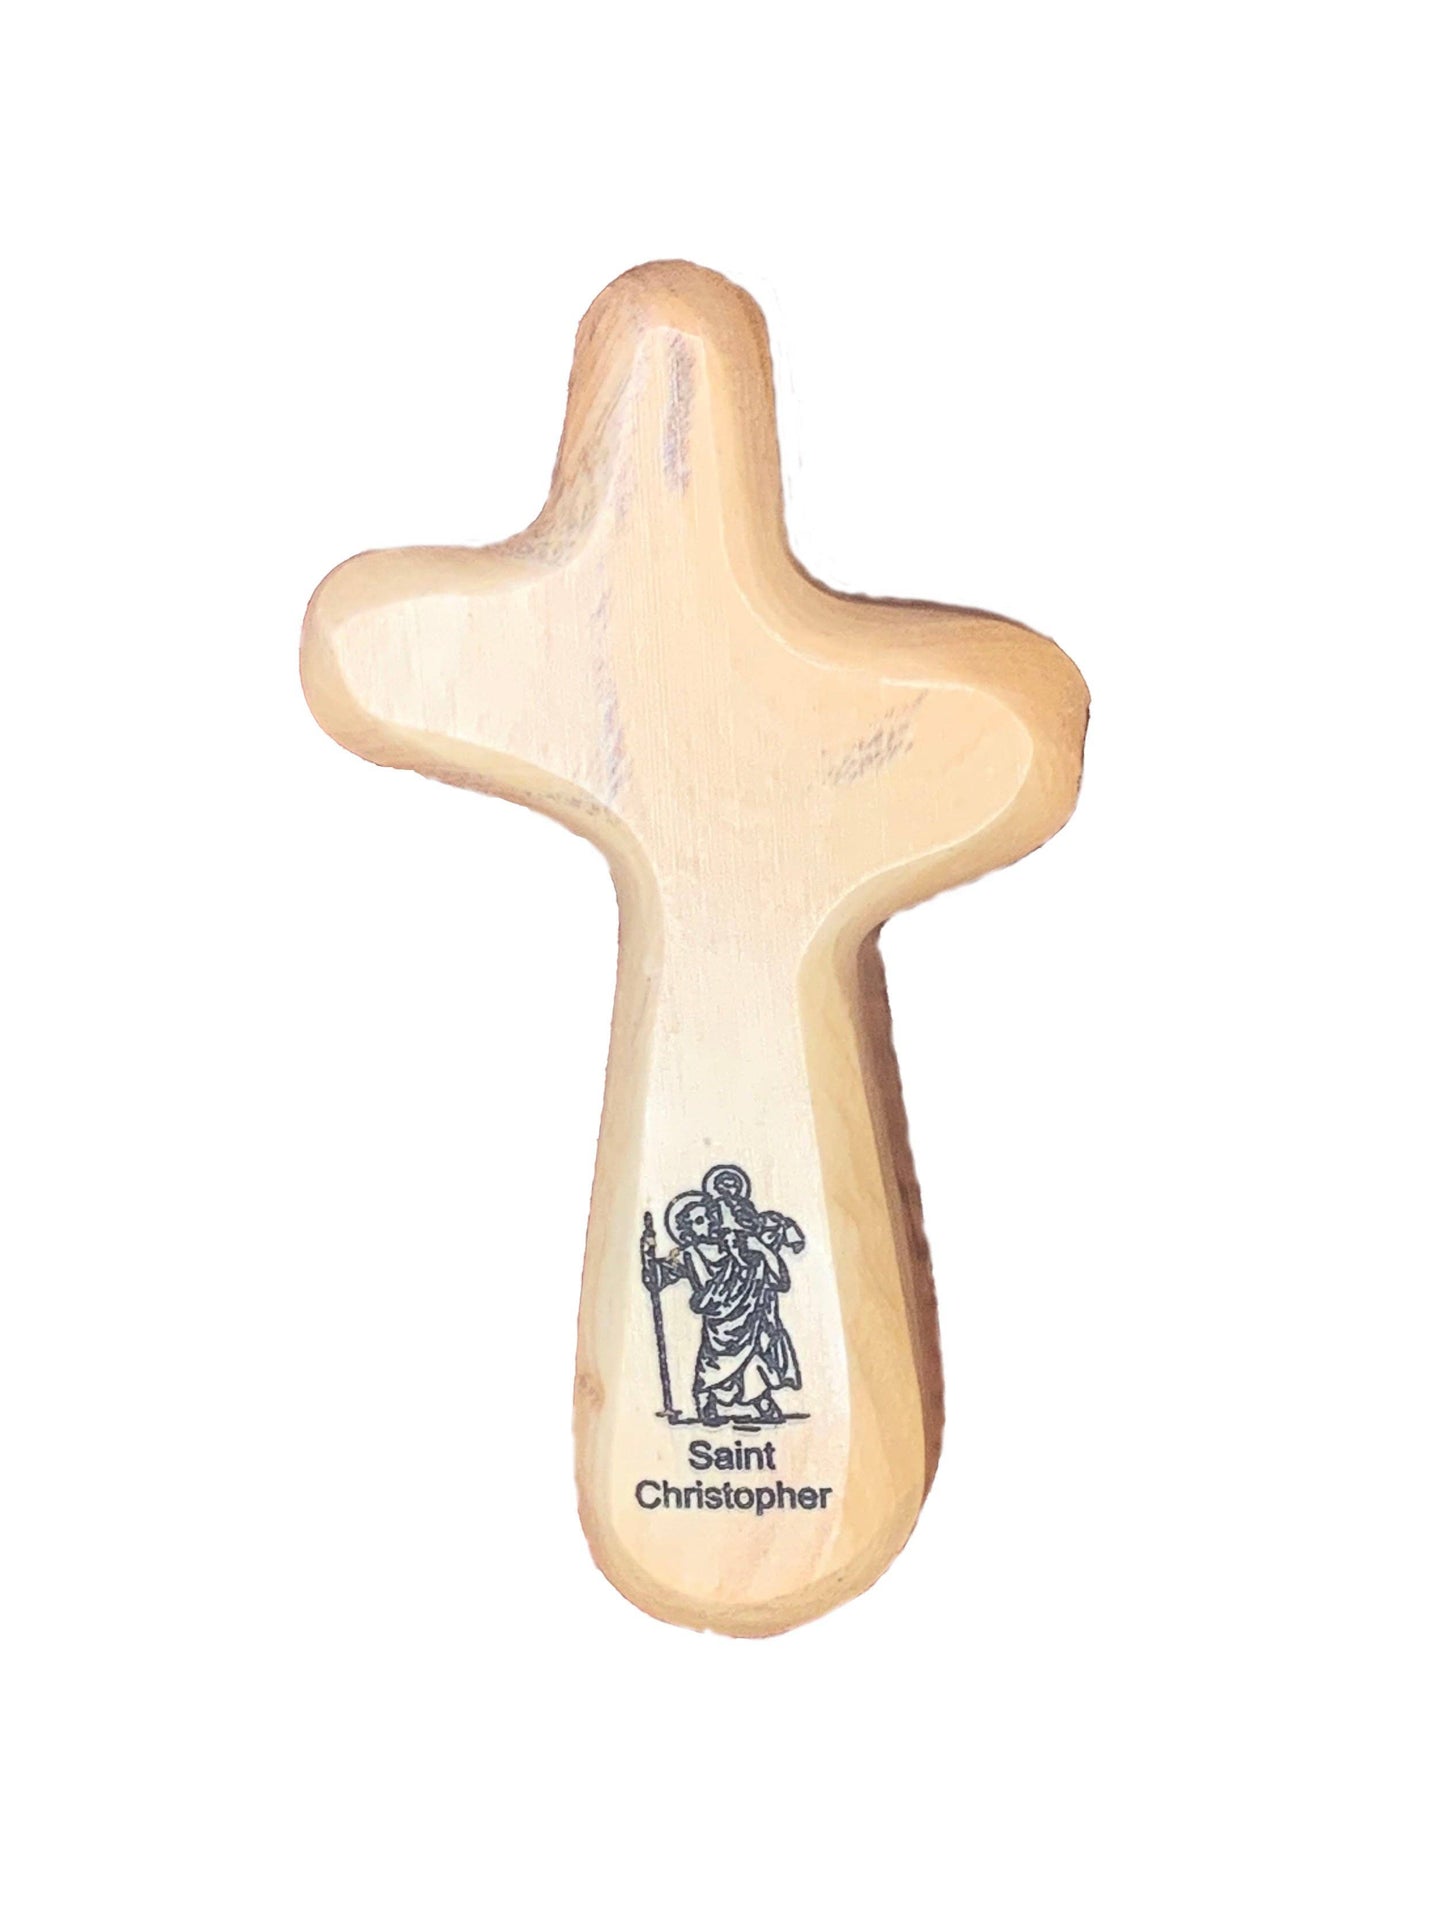 Saint Christopher - Engraved Holding Cross